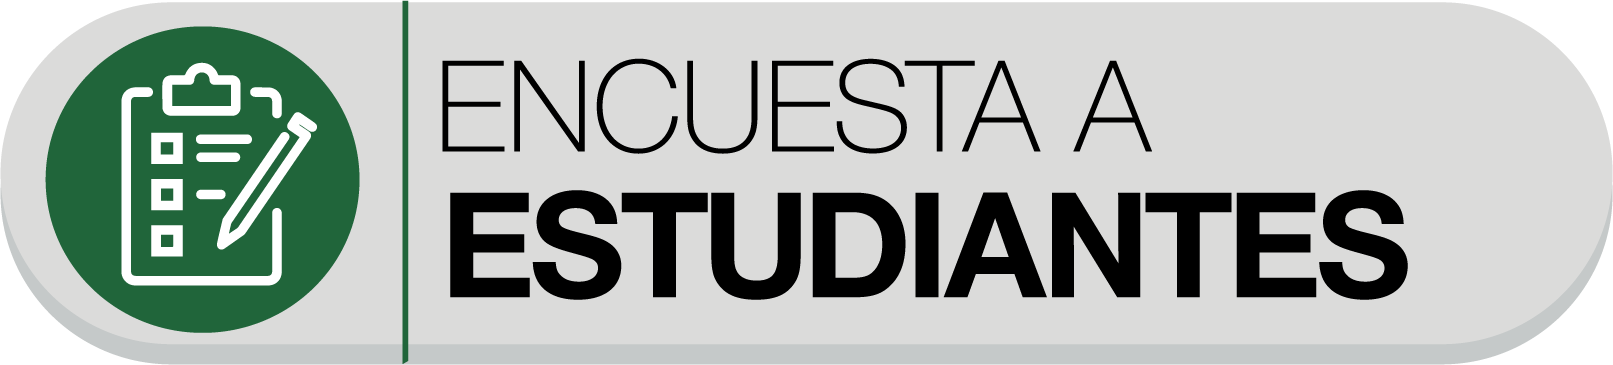 ENCUESTA A ESTUDIANTES-01.png